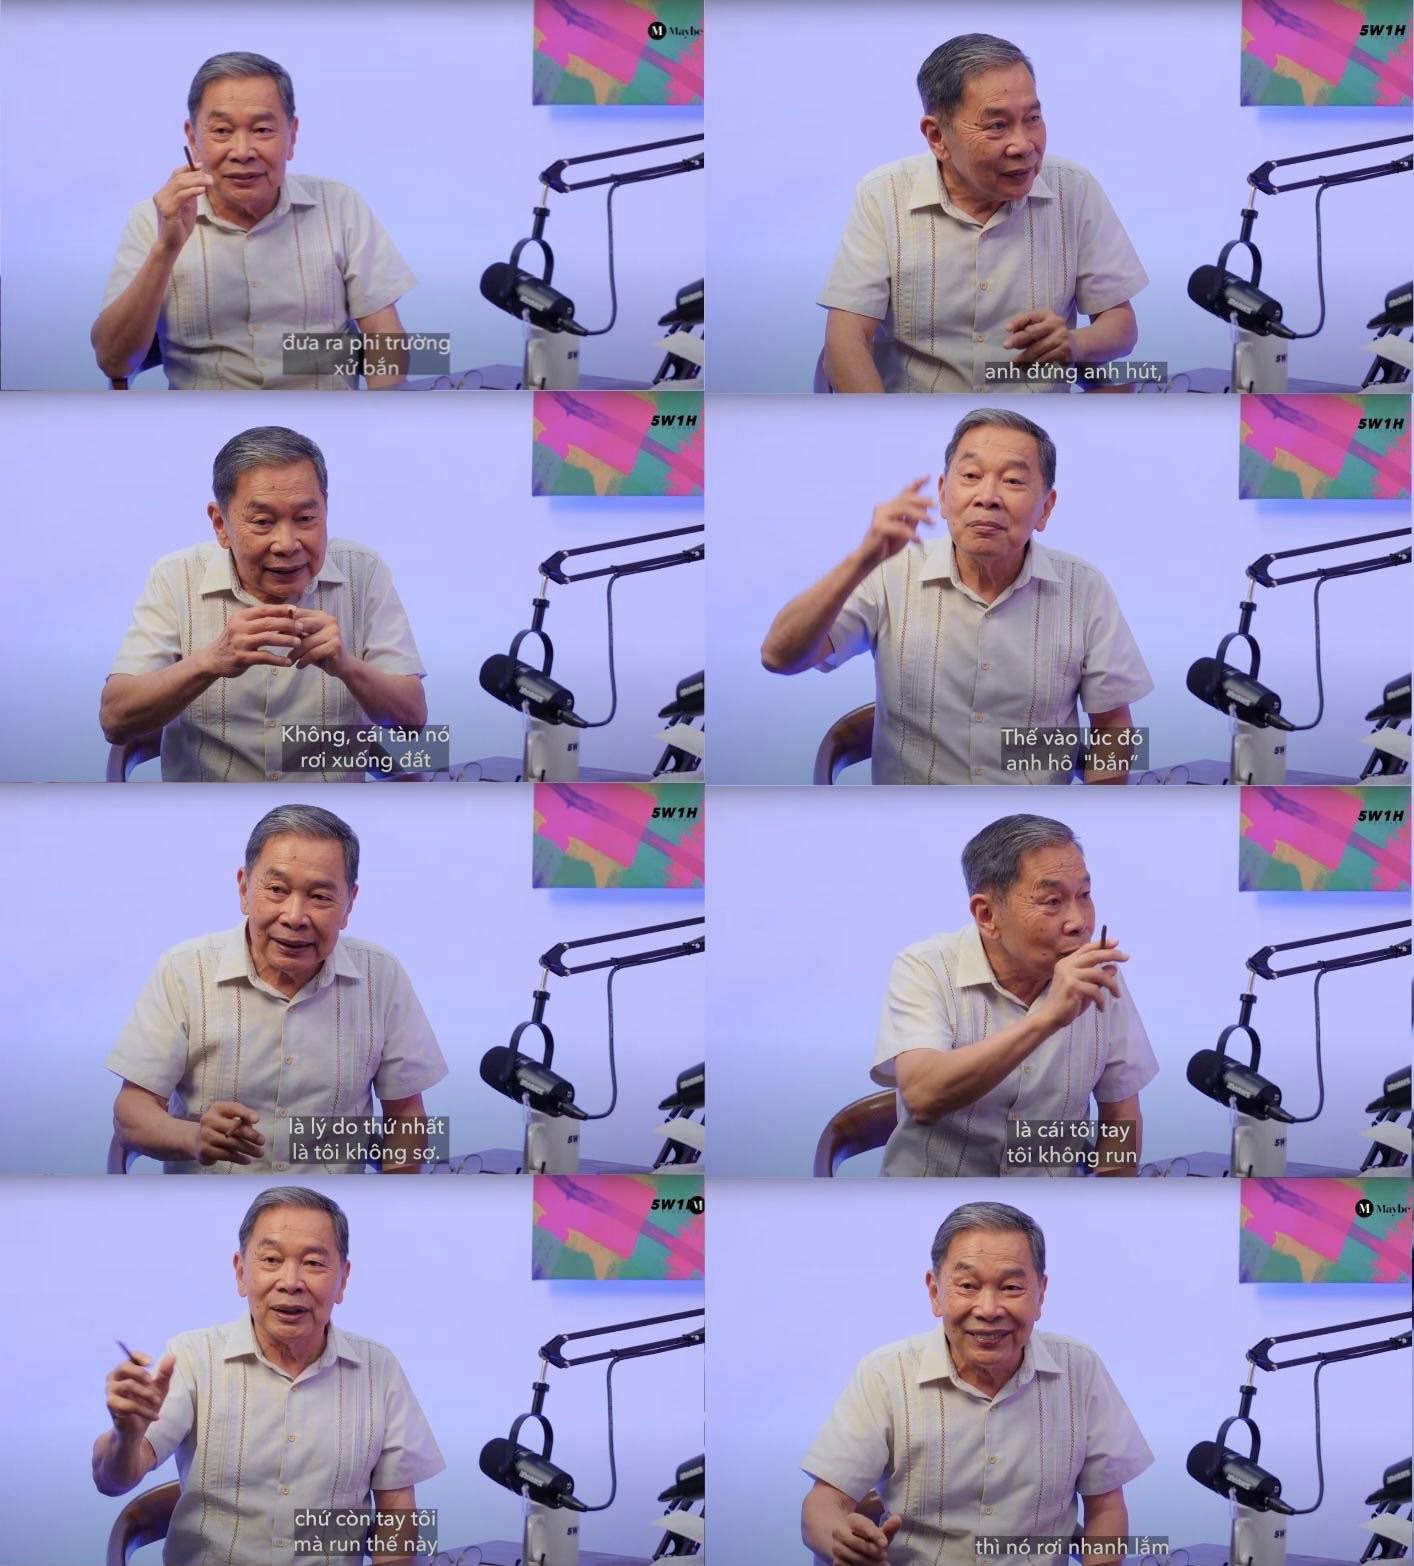   Ông Nguyễn Hữu Động tại 5W1H Podcast(Chương trình được dẫn dắt bởi nhà báo Vũ Kim Hạnh)   ...